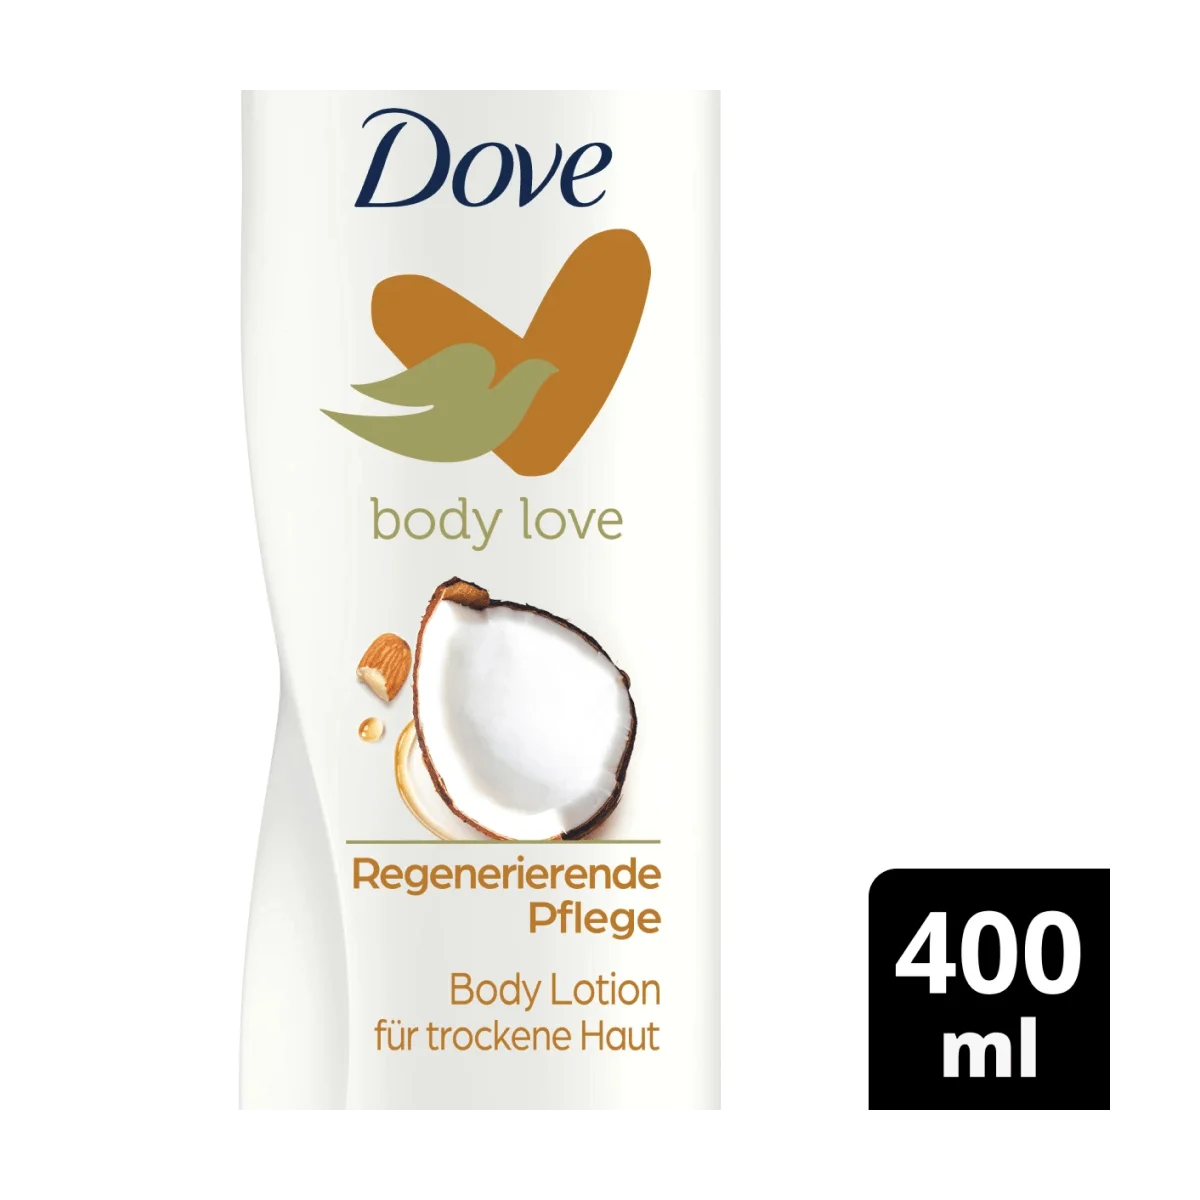 Dove Bodylotion body love regenerierende Pflege, 400 ml